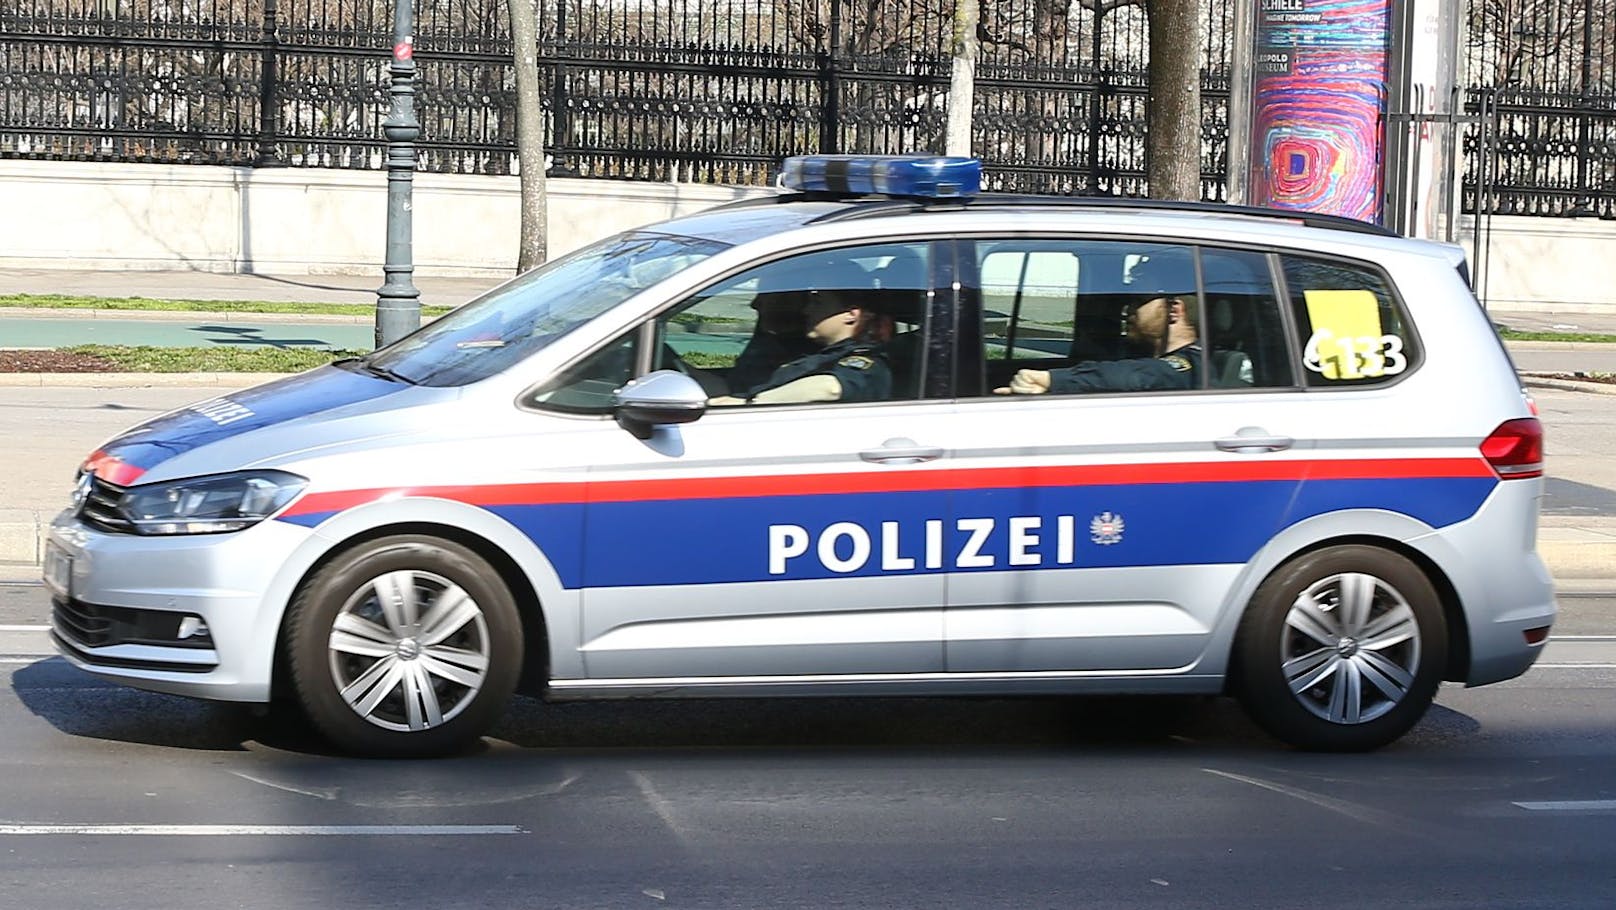 In der Wiener Innenstadt ereignete sich ein Raub, die Polizei fahndet nach dem Tatverdächtigen (Symbolbild).